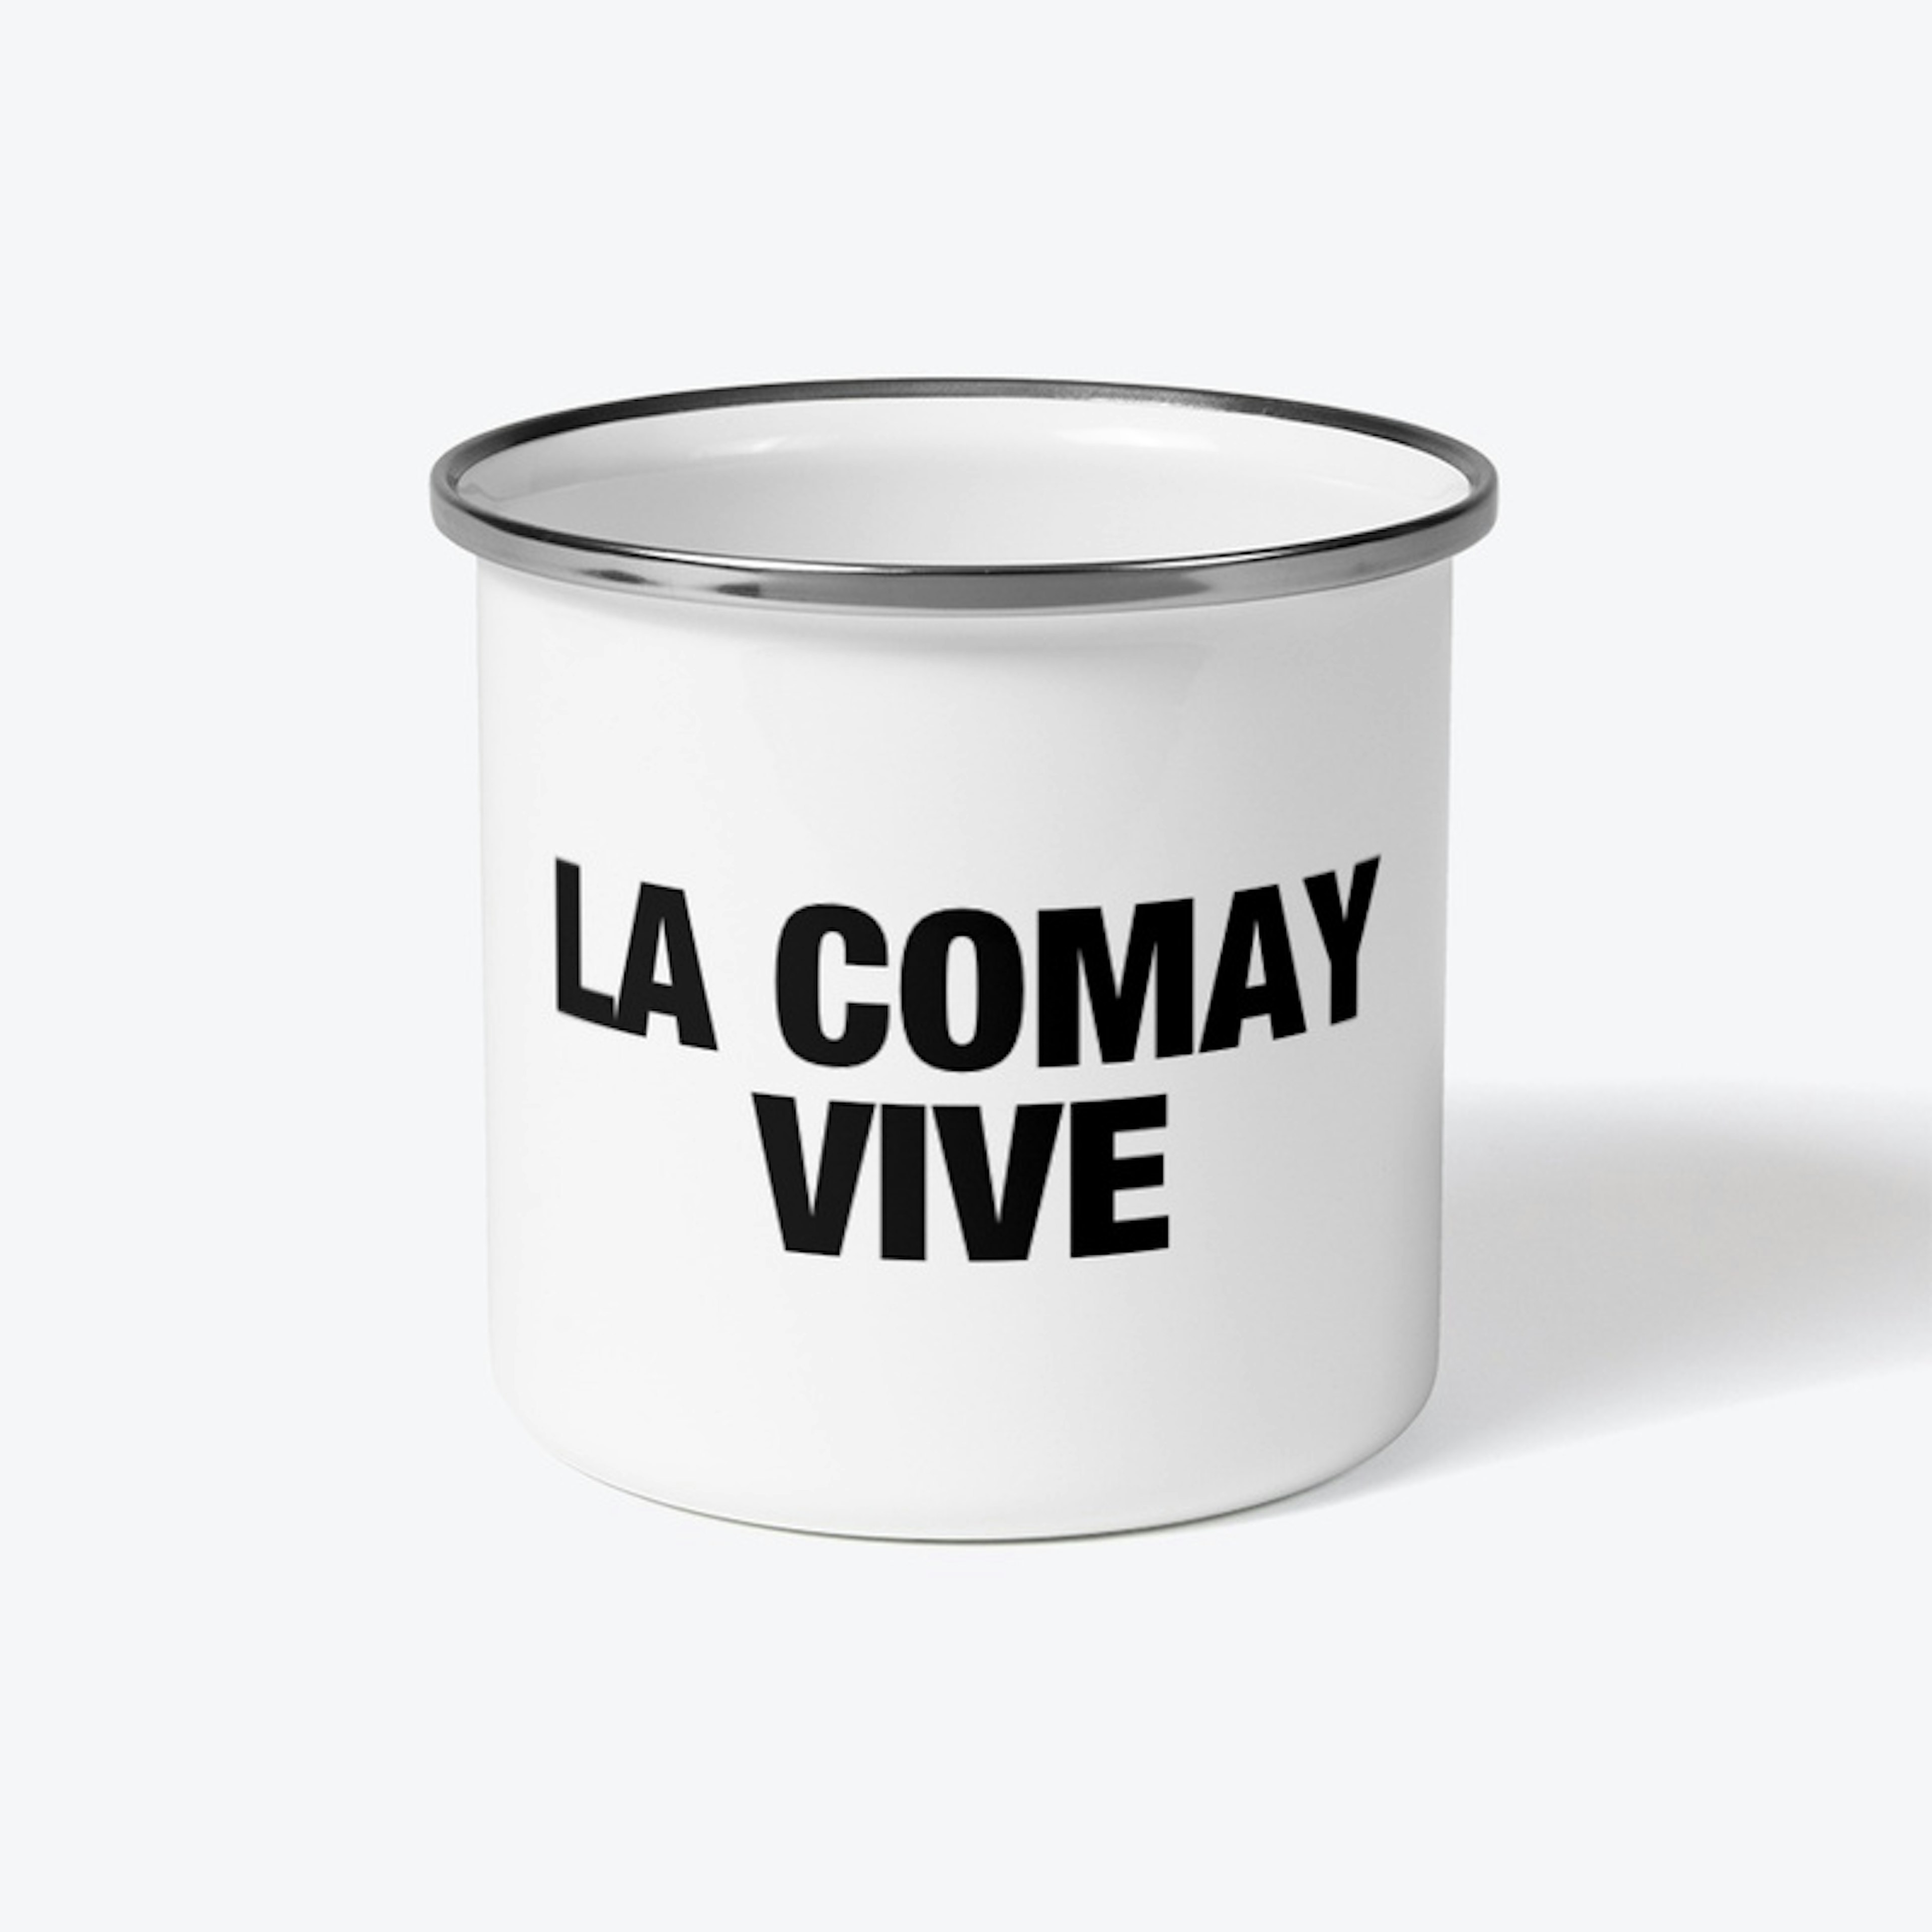 LA COMAY VIVE